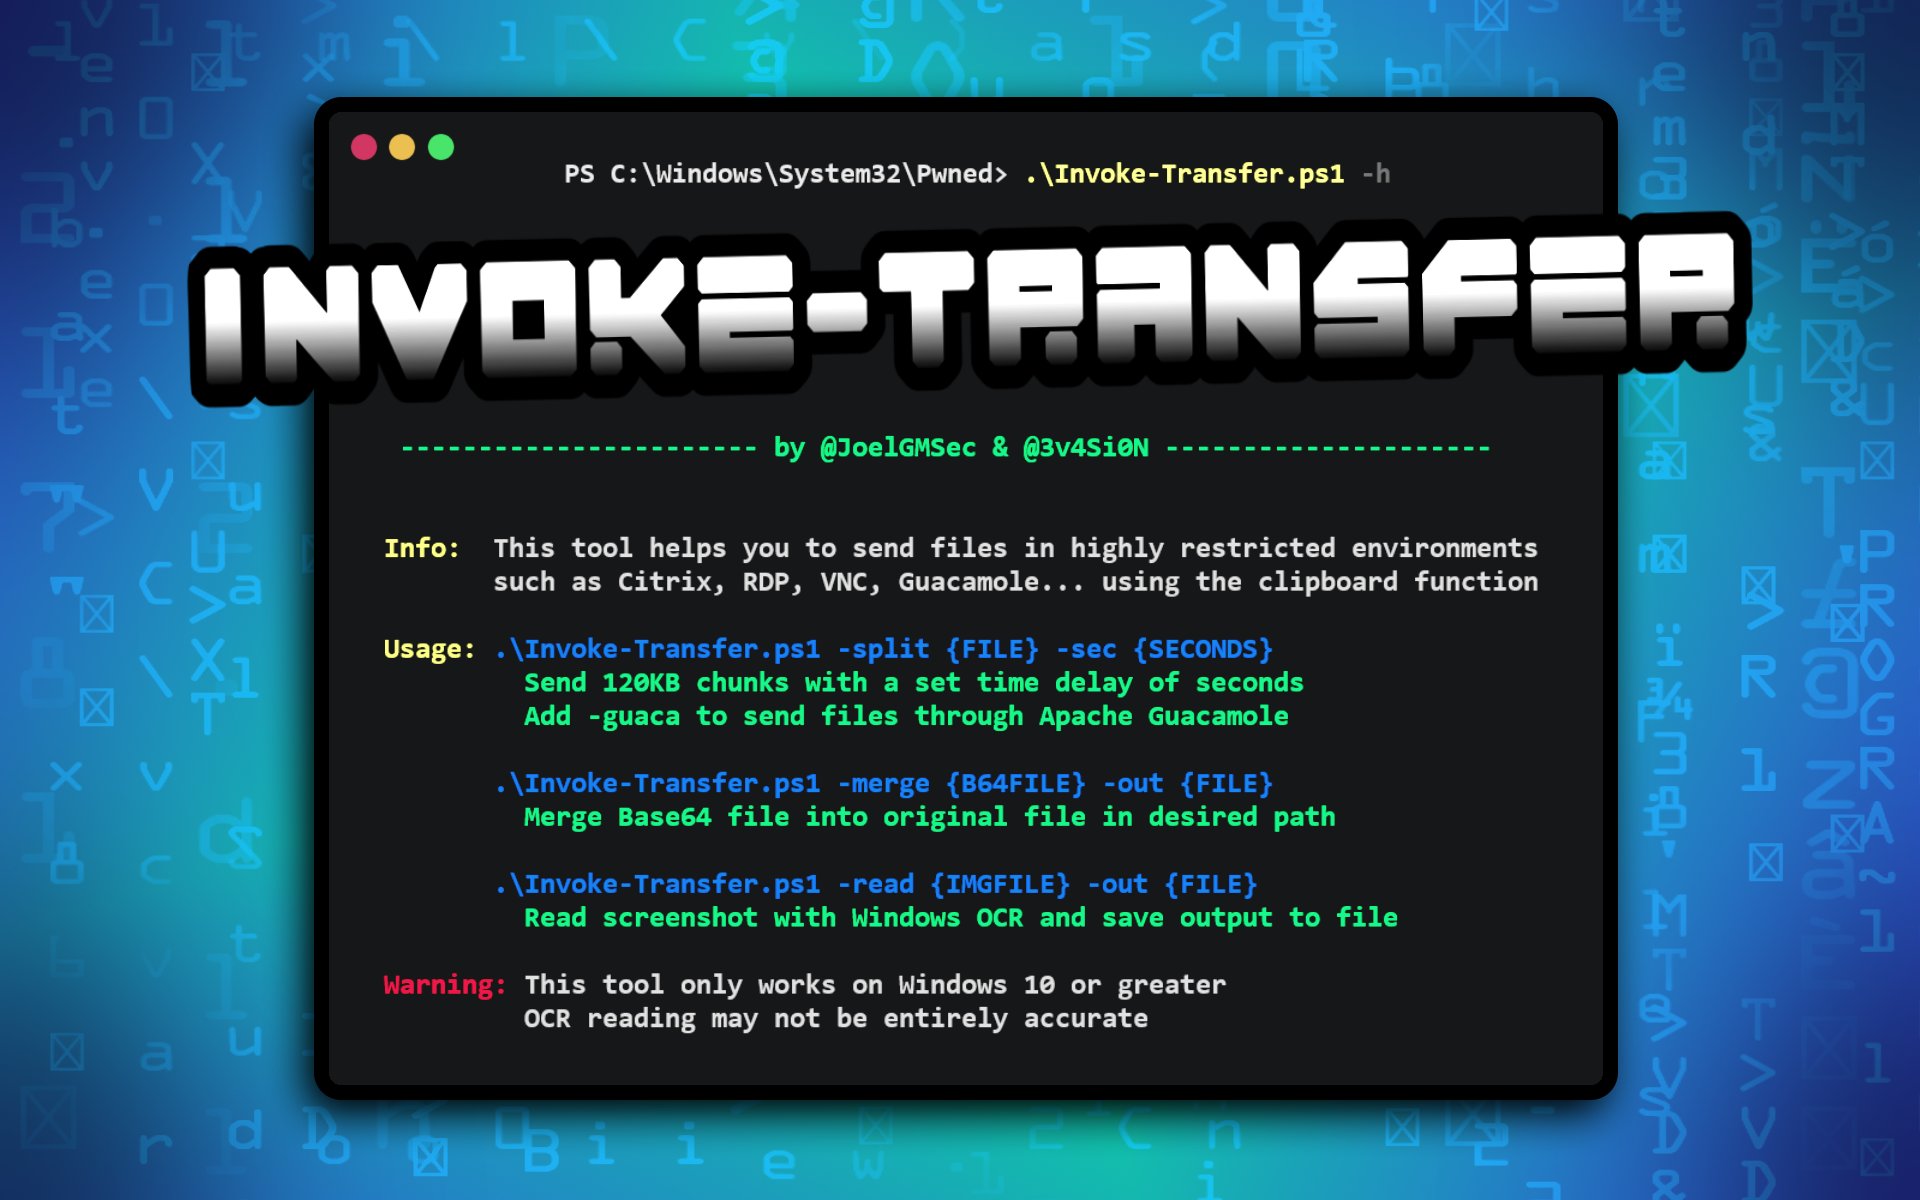 Invoke-Transfer